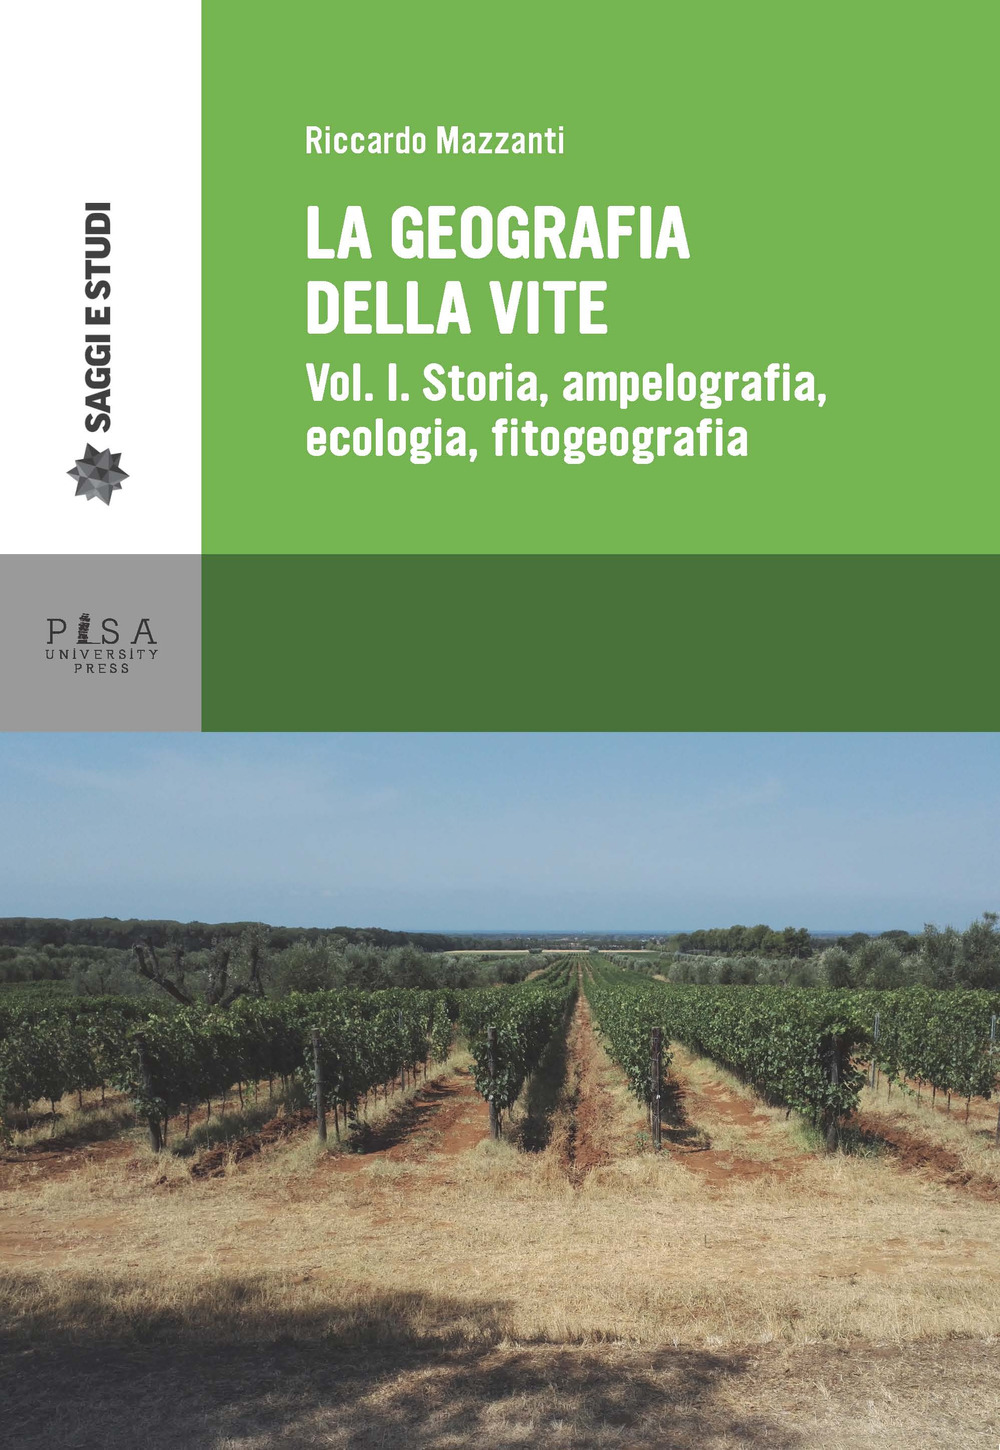 Image of La geografia della vite. Vol. 1: Storia, ampelografia, ecologia, fitogeografia.